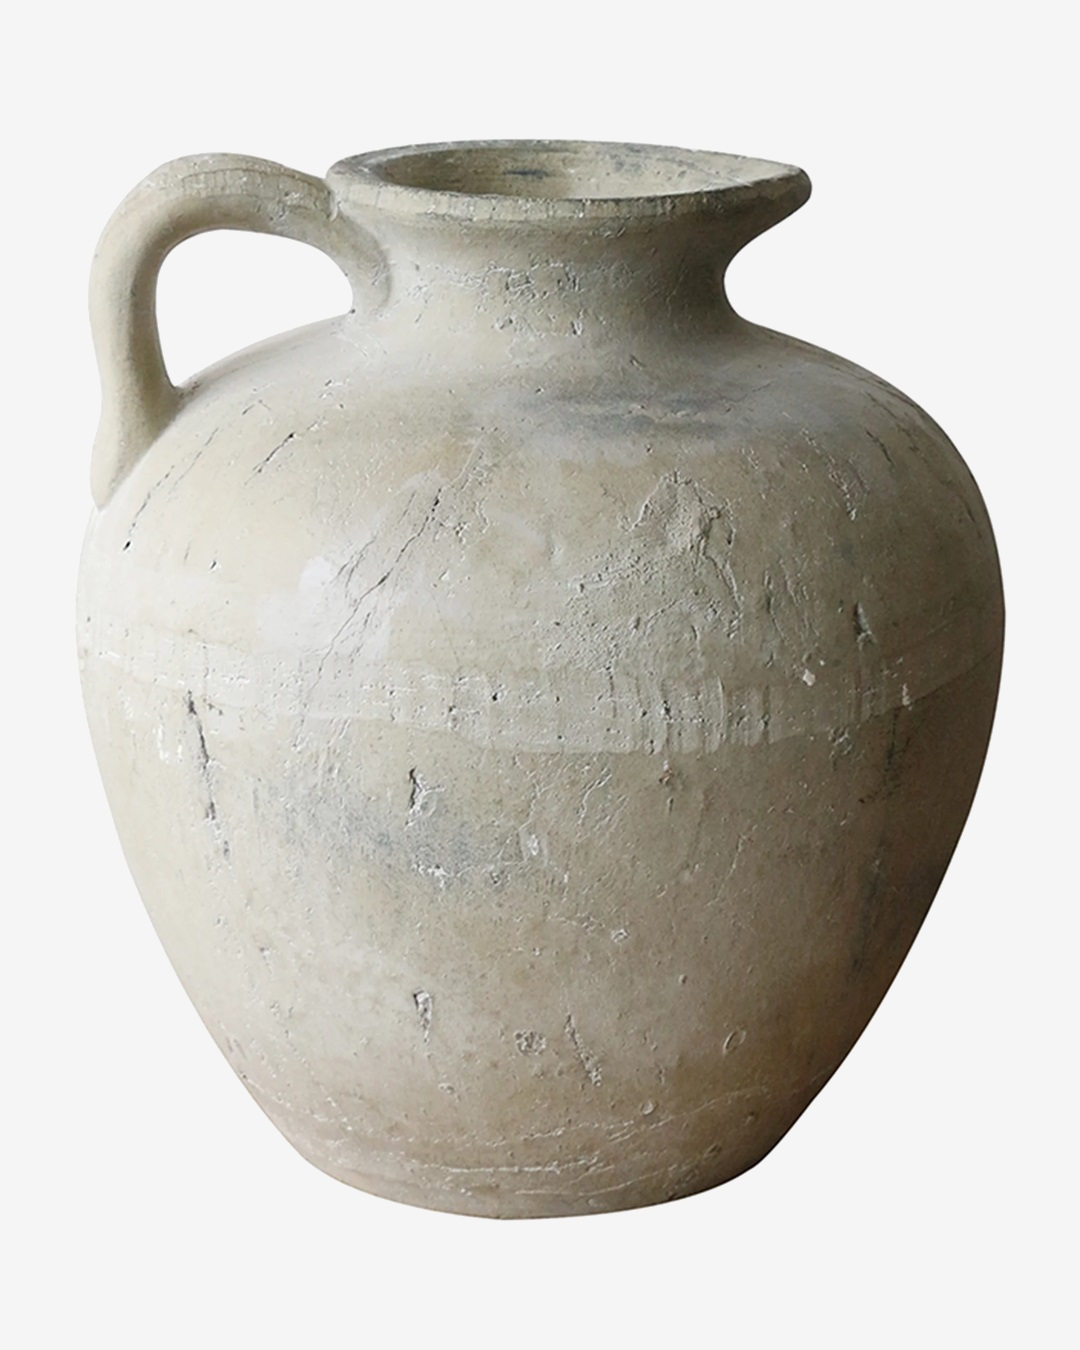 Tuscan style large stone jug